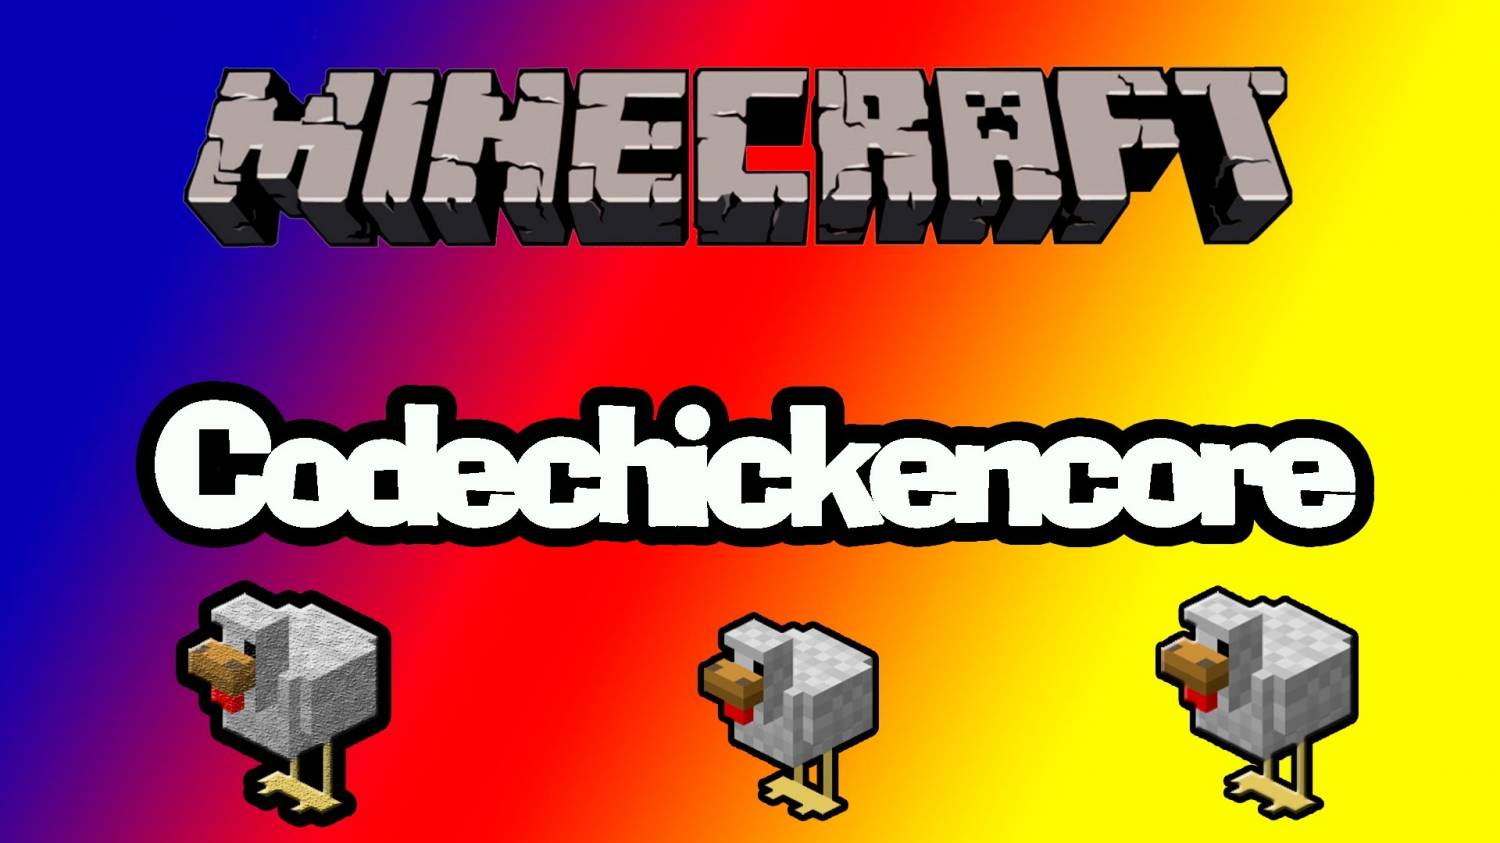 Мод Codechickencore для Minecraft 1.8.3